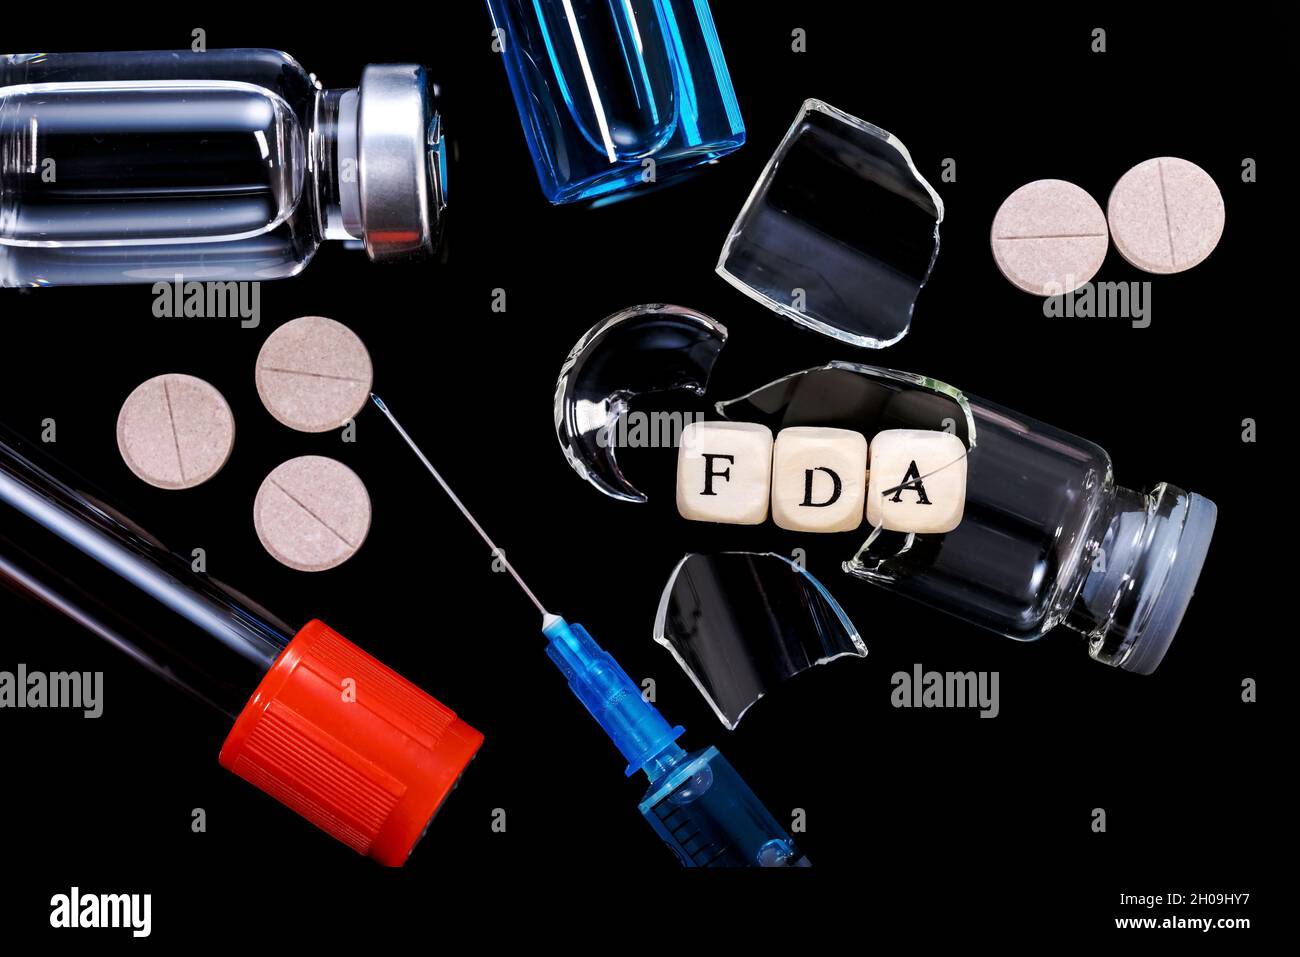 El concepto de rechazo de nuevos medicamentos, vacunas y biofarmacéuticos por parte de la FDA. Foto de stock